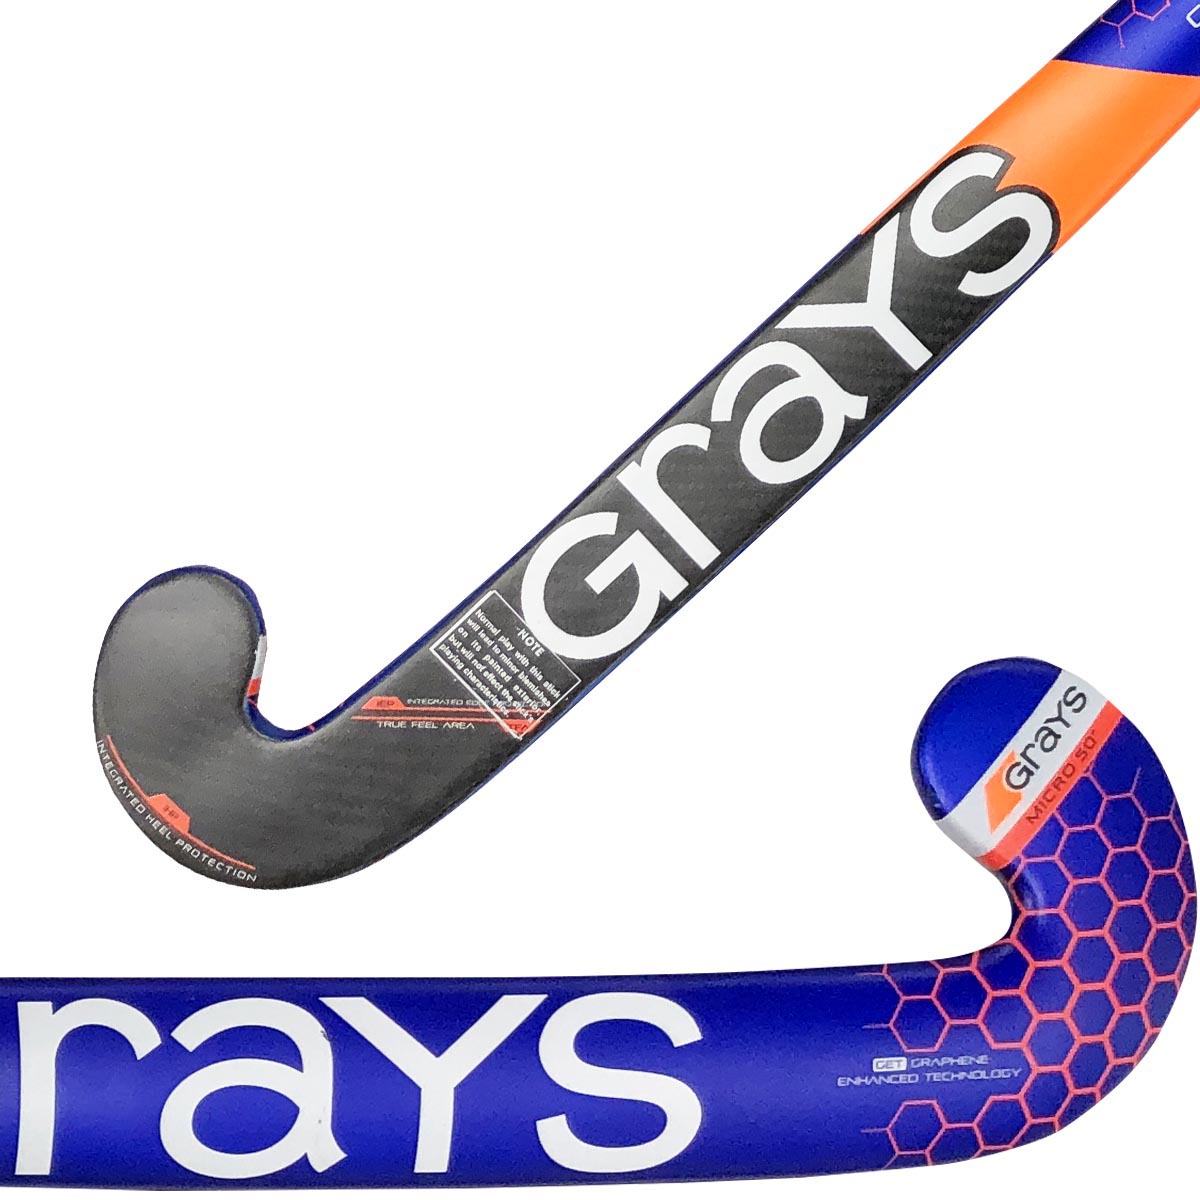 Field Hockey Sticks, Field Hockey Gear